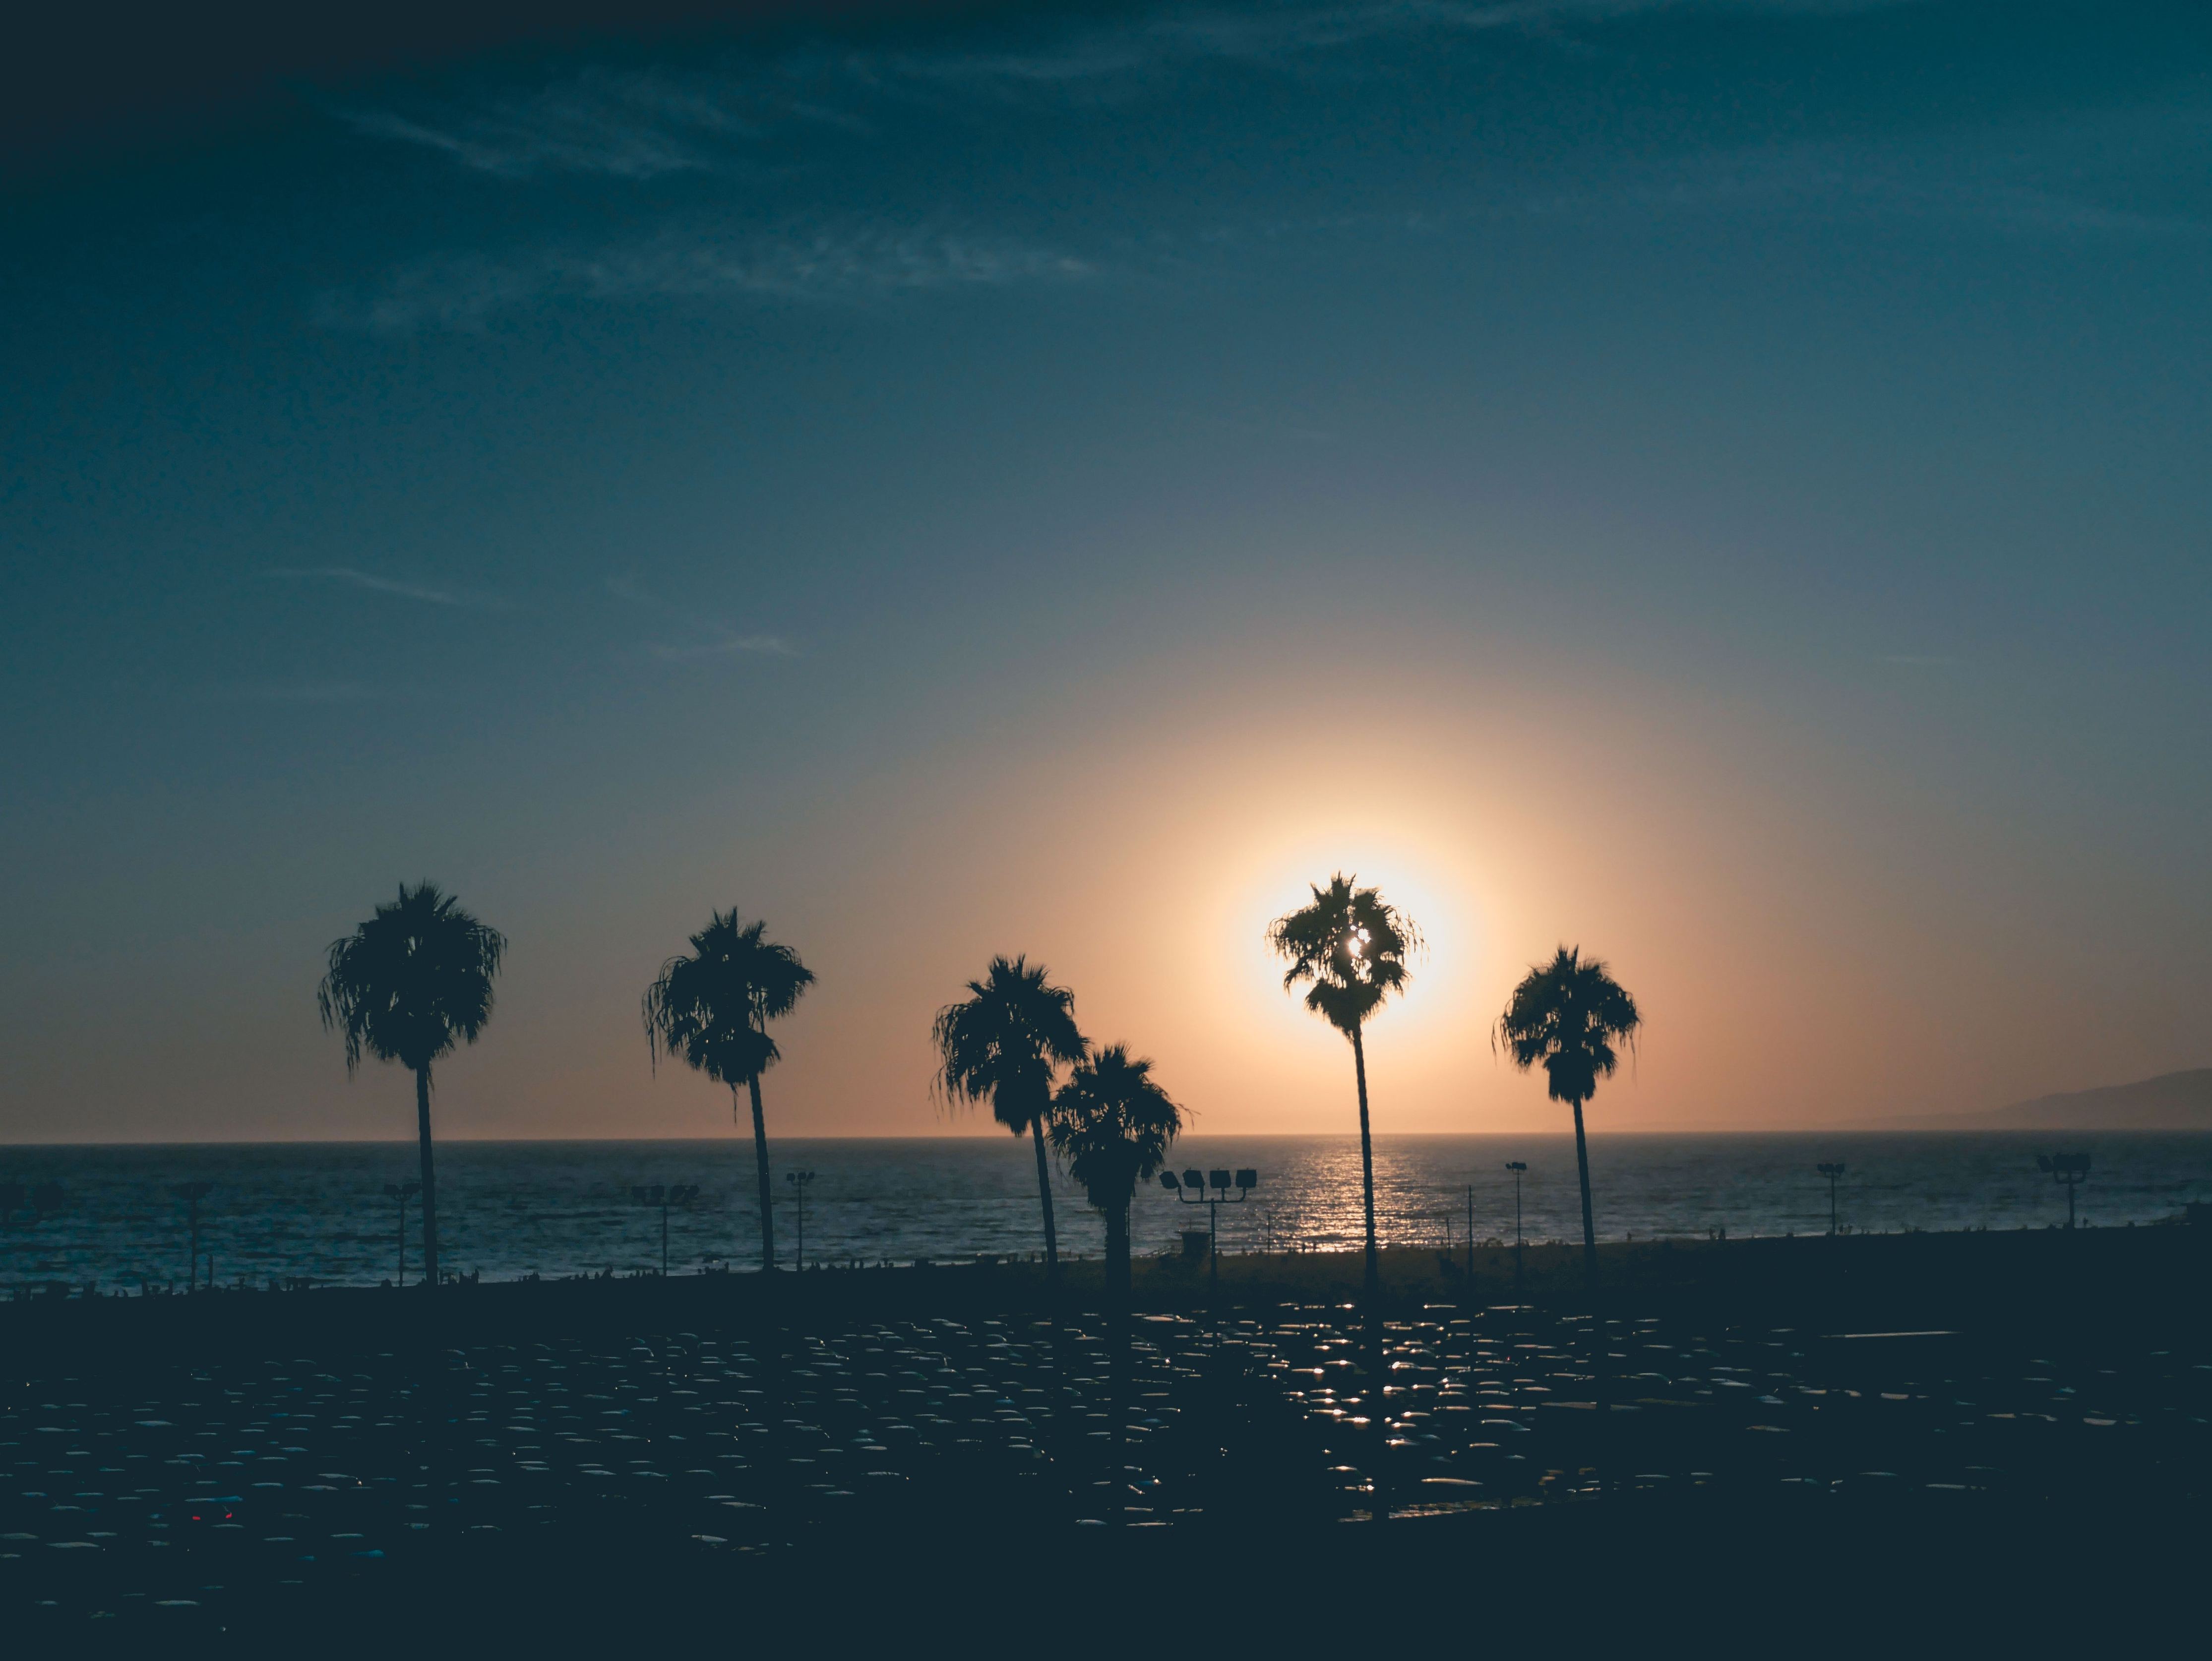 dusk sky over beach with palm trees